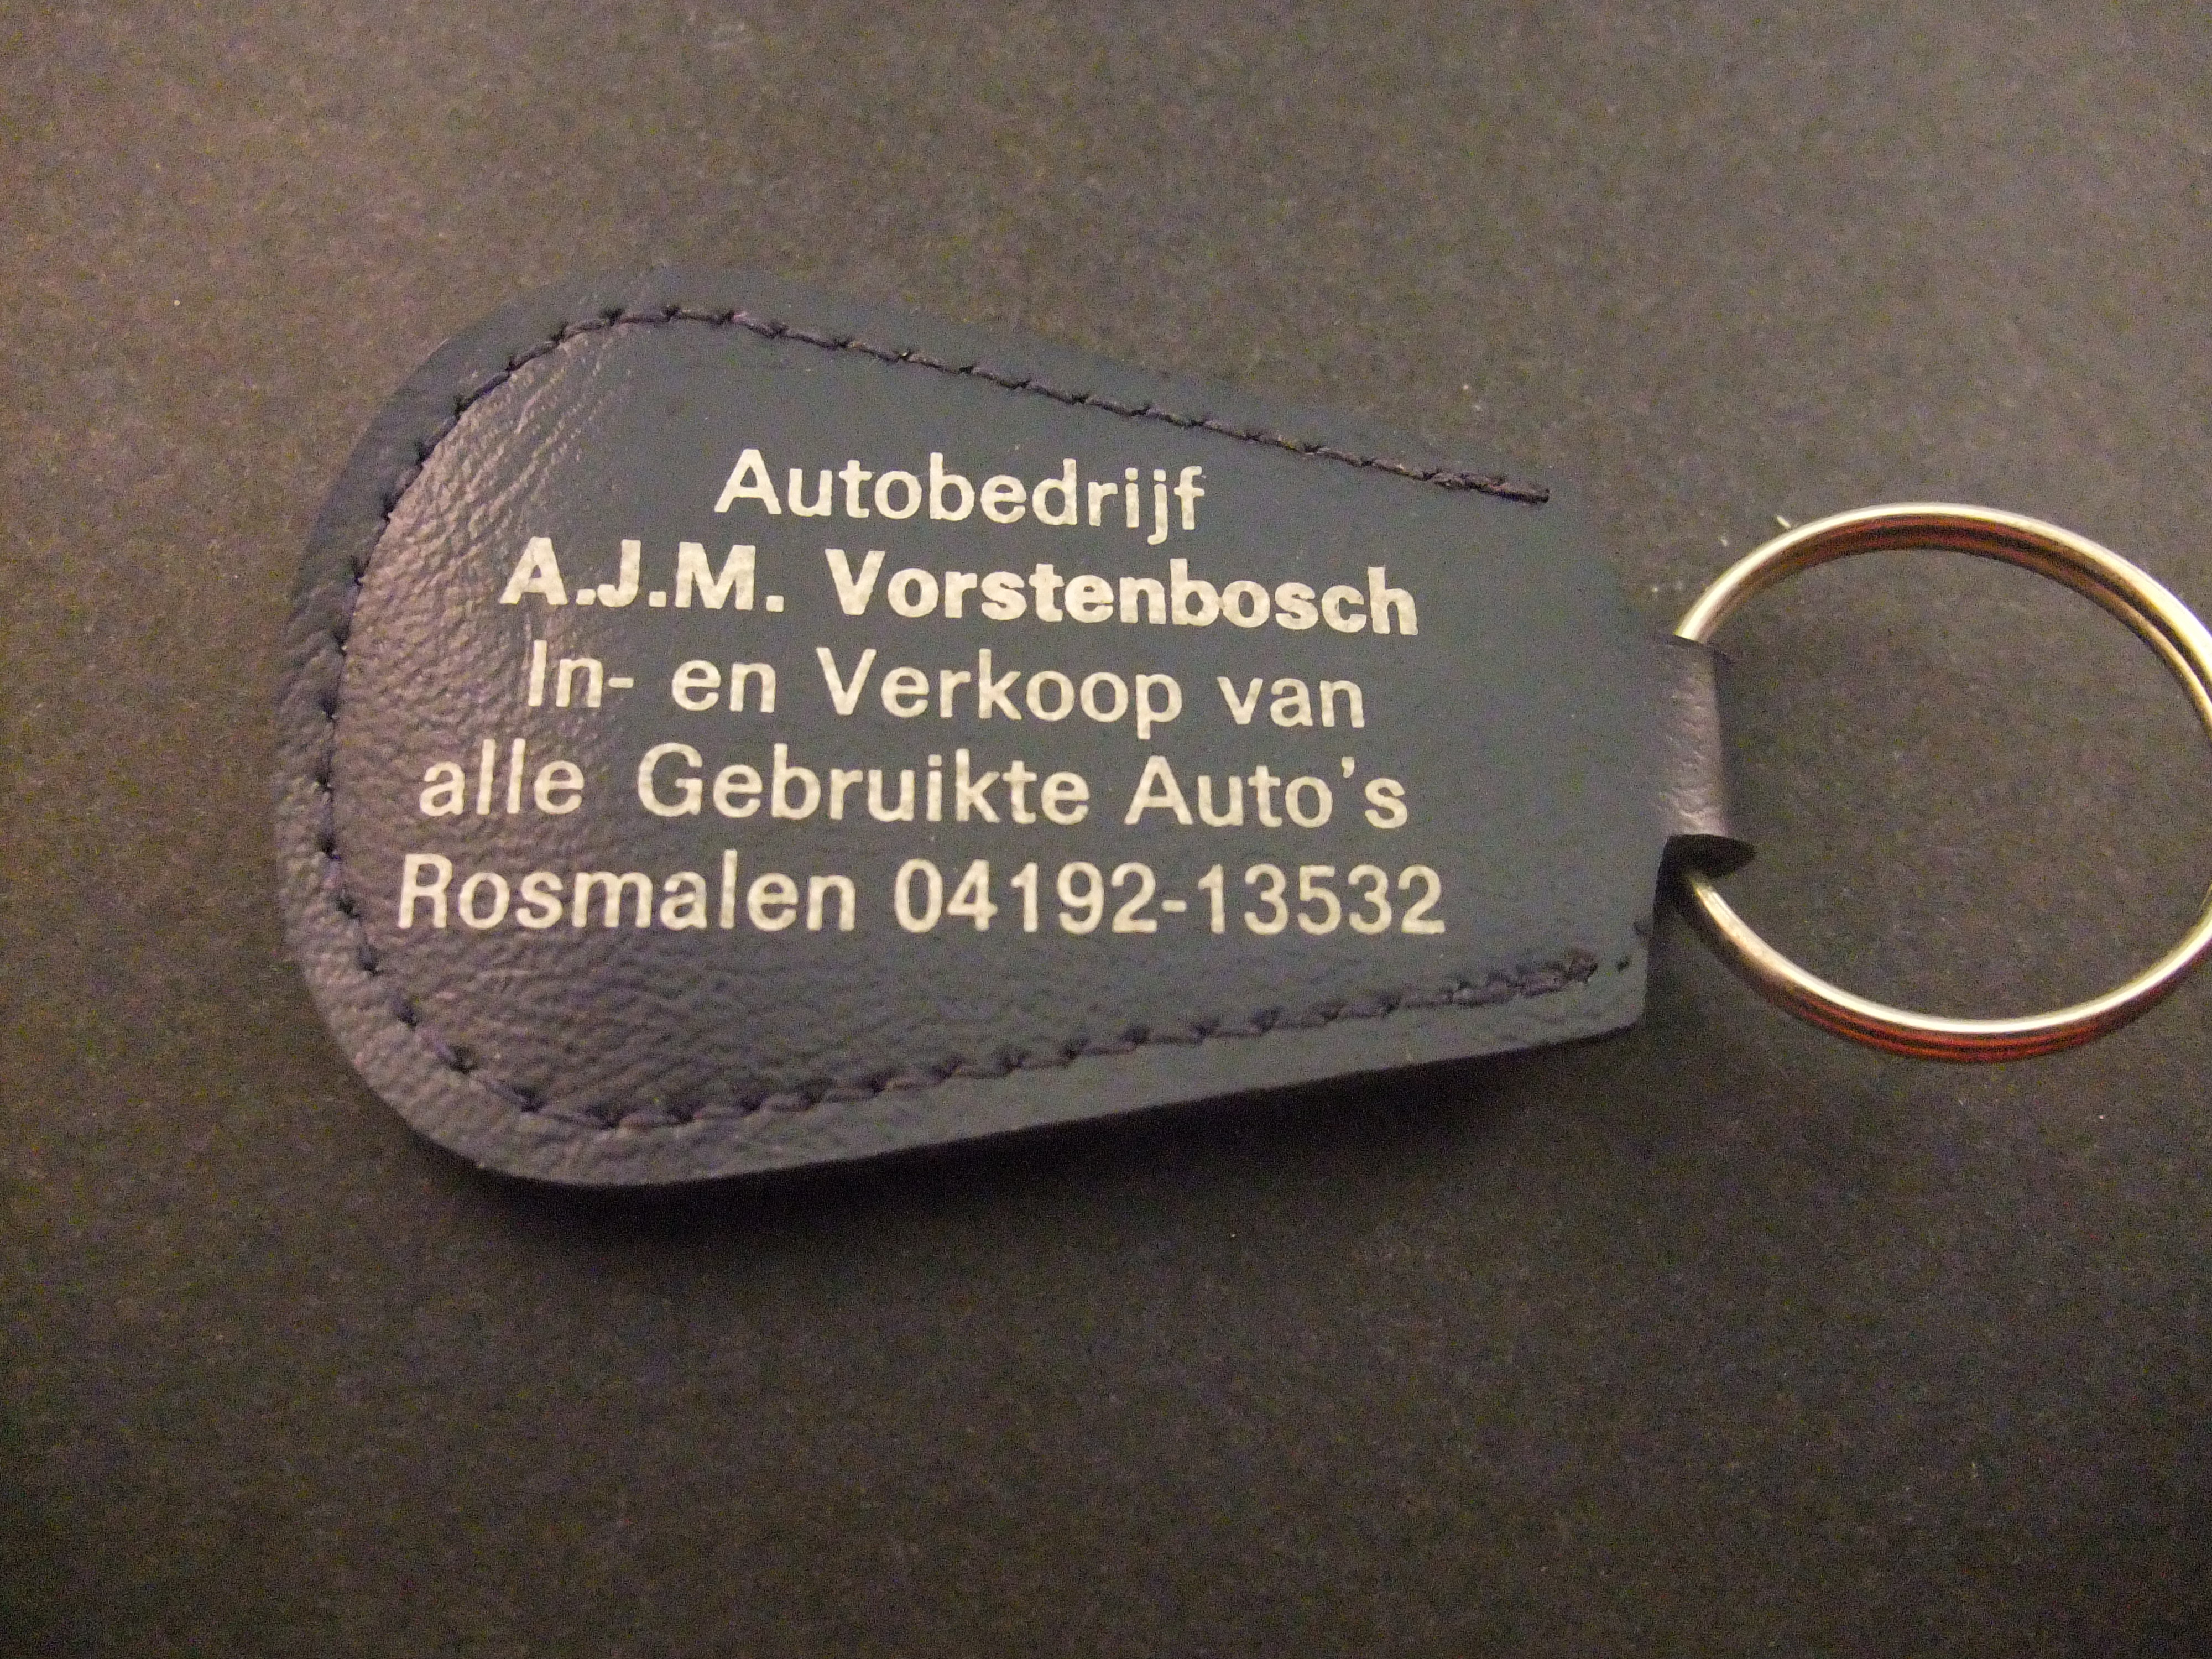 Autoberijf A.J.M.Vorrstenbosch rosmalen in en verkoop gebruikte auto's, sleutelhanger